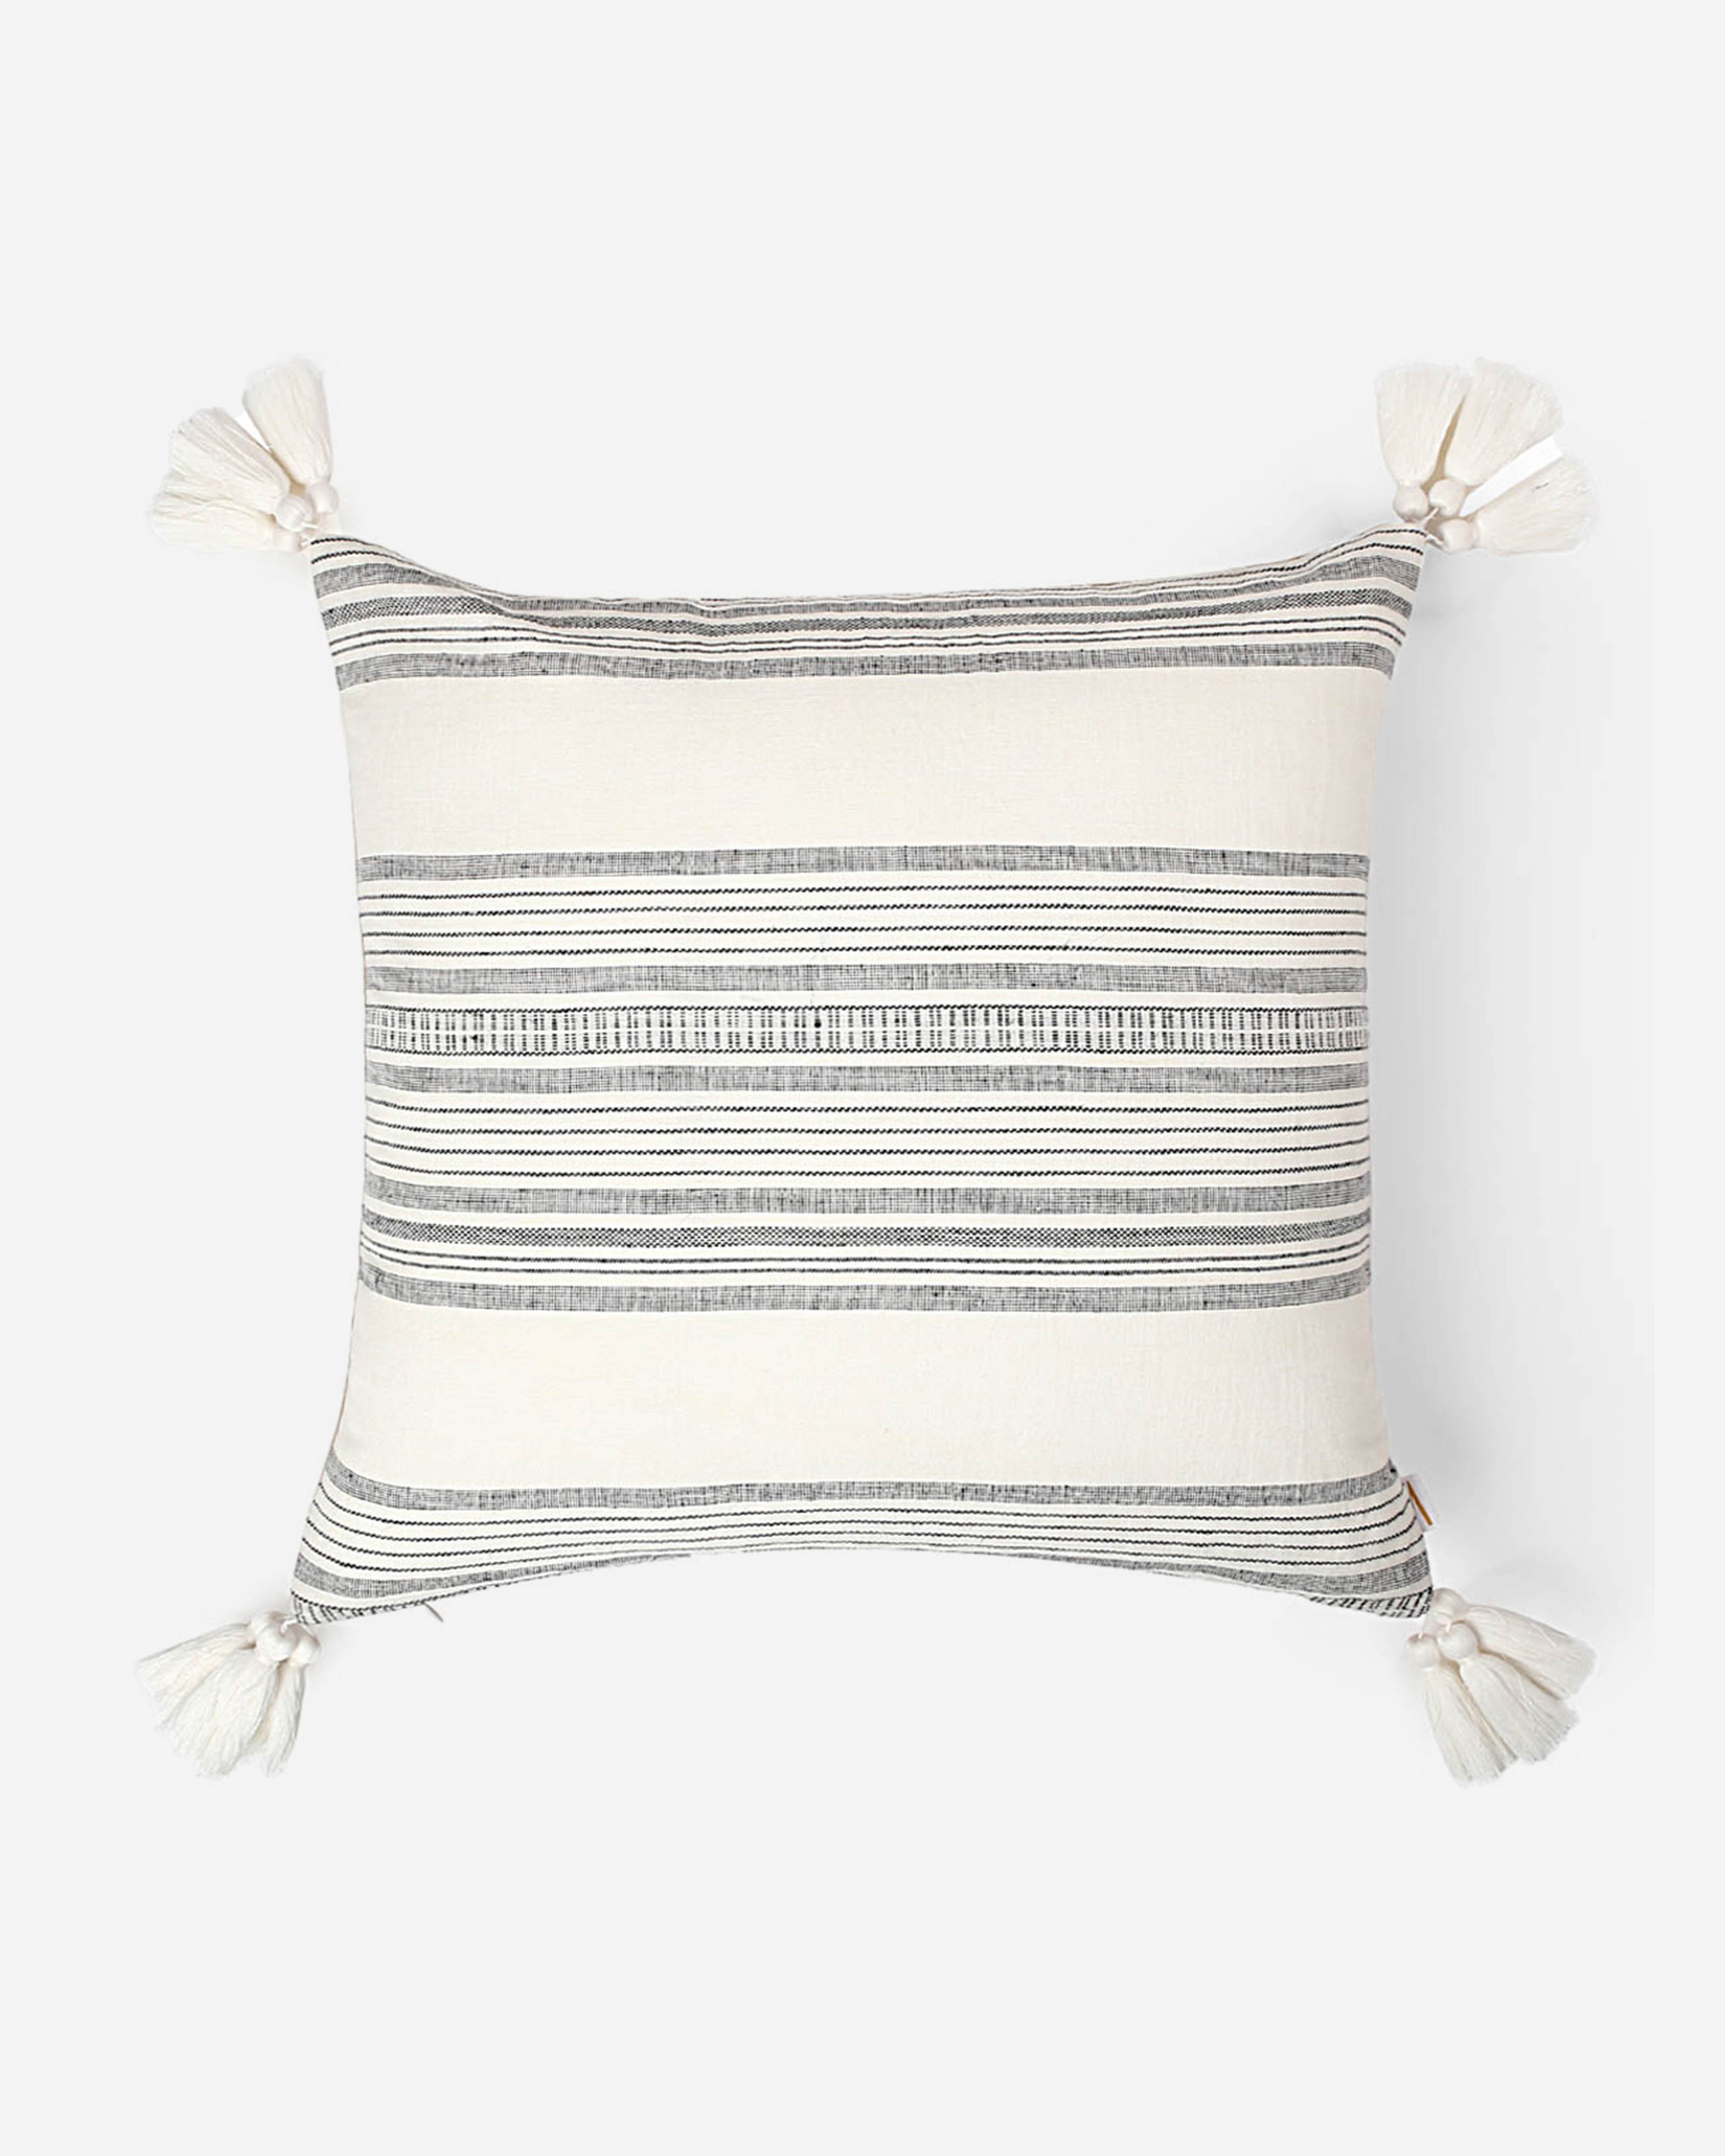 Calypso Extra Weft Cotton Linen Cushion Cover